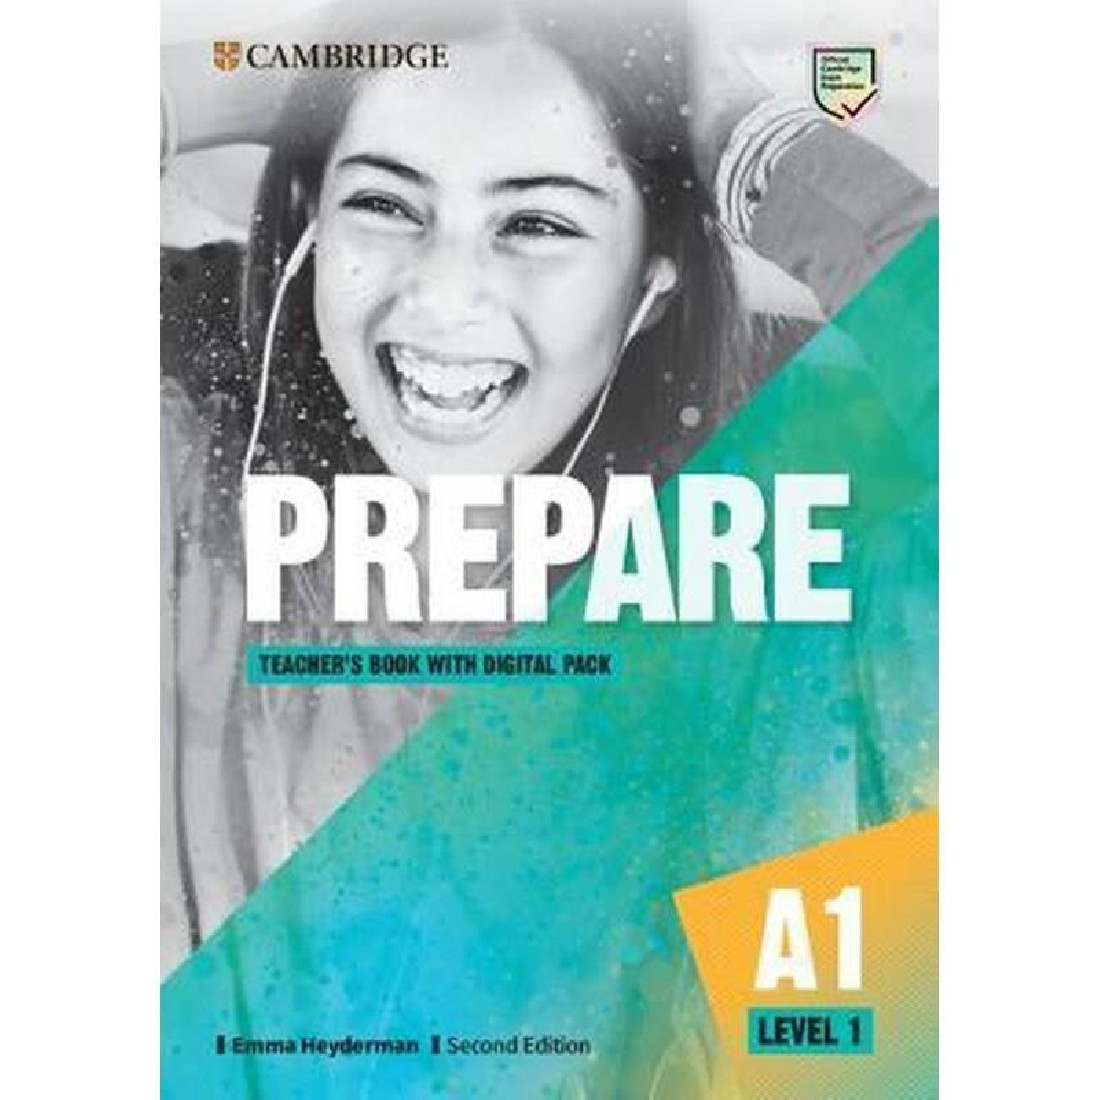 Prepare books levels. Prepare student's book Cambridge a1 Level 1. Учебник Cambridge prepare Level 1. Prepare second Edition Level 1. Prepare 1 2nd Edition.